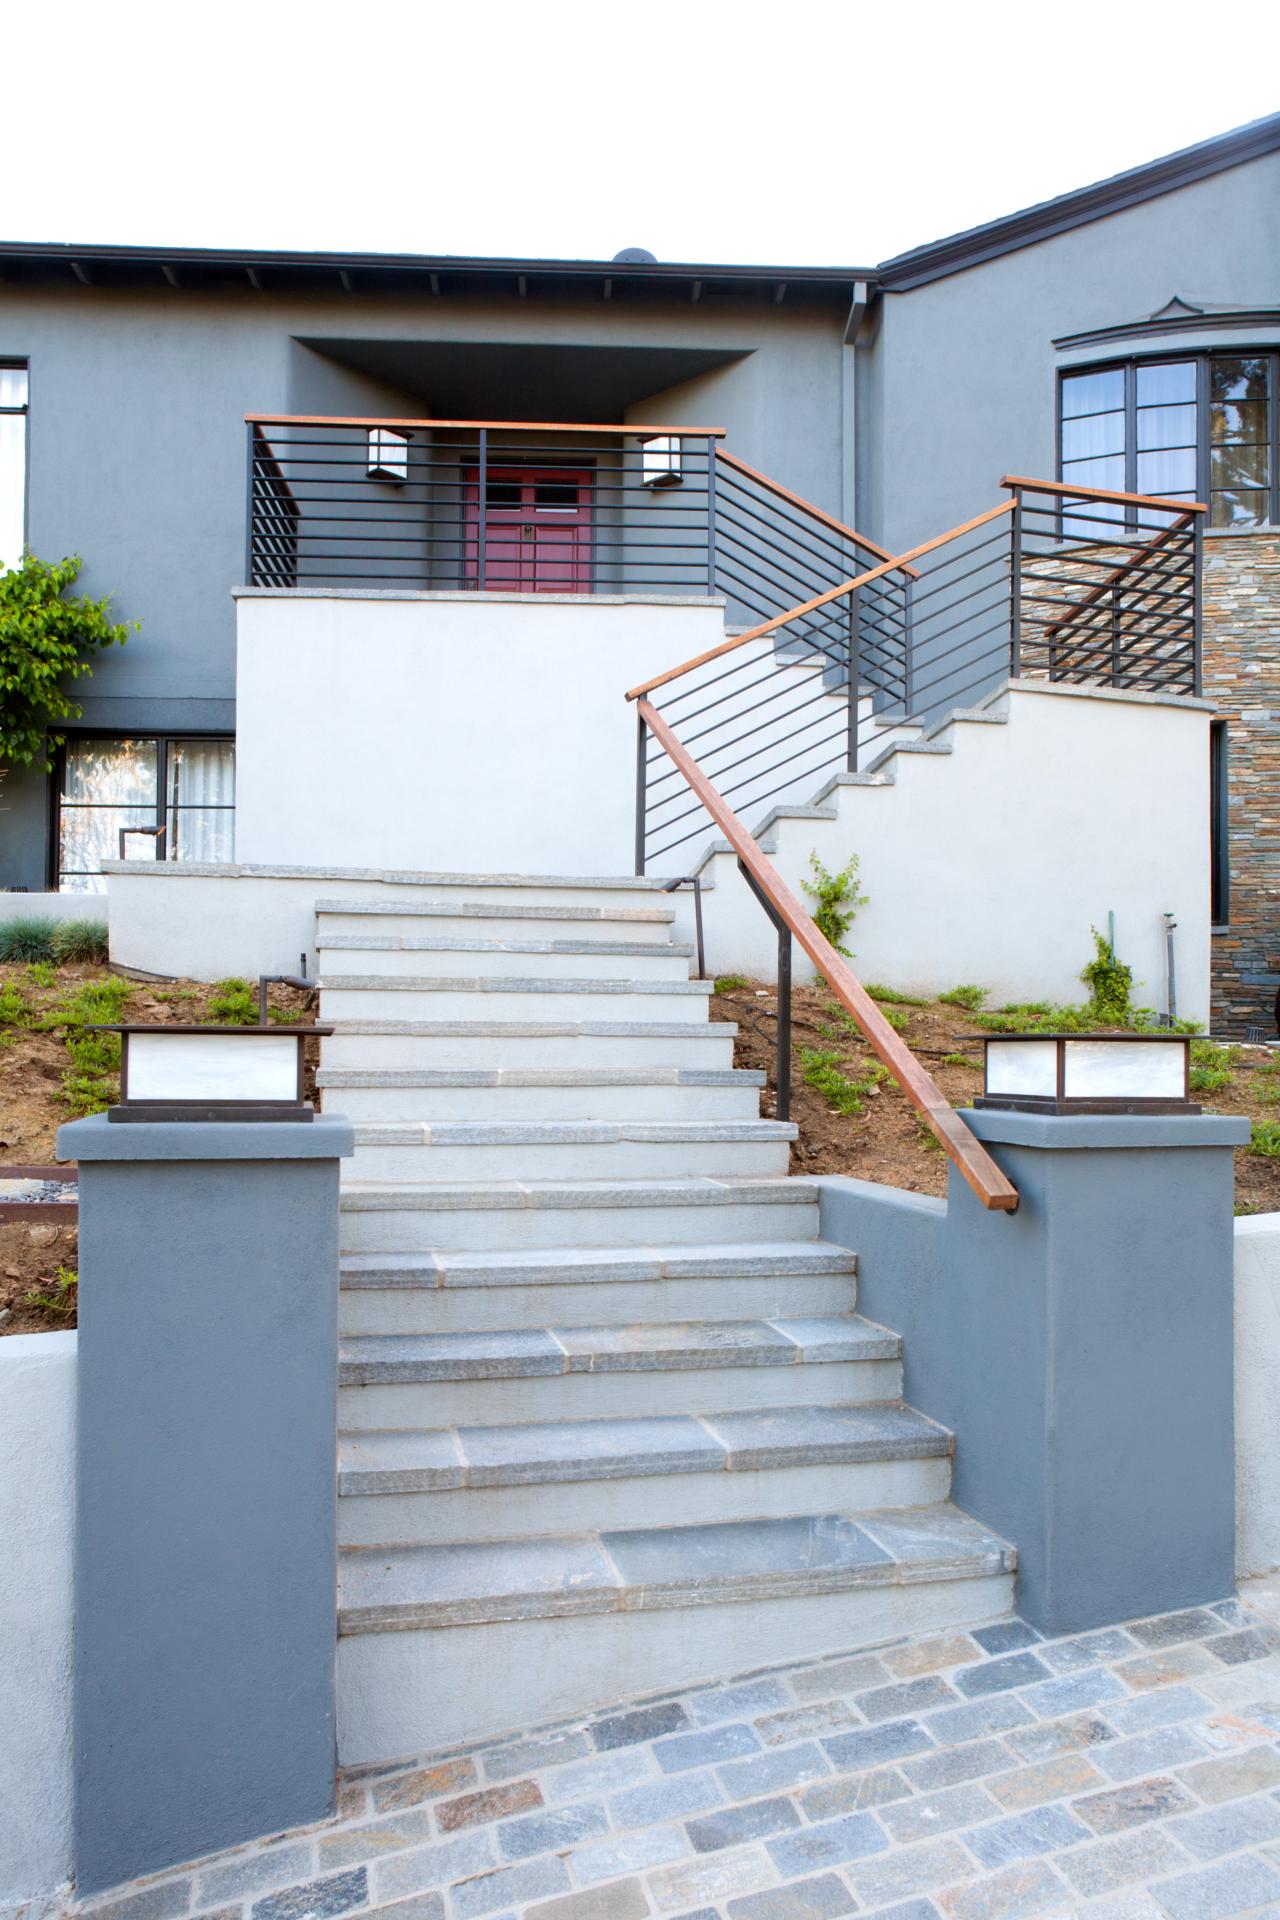 Contemporary Home Exterior With Stone Steps | HGTV